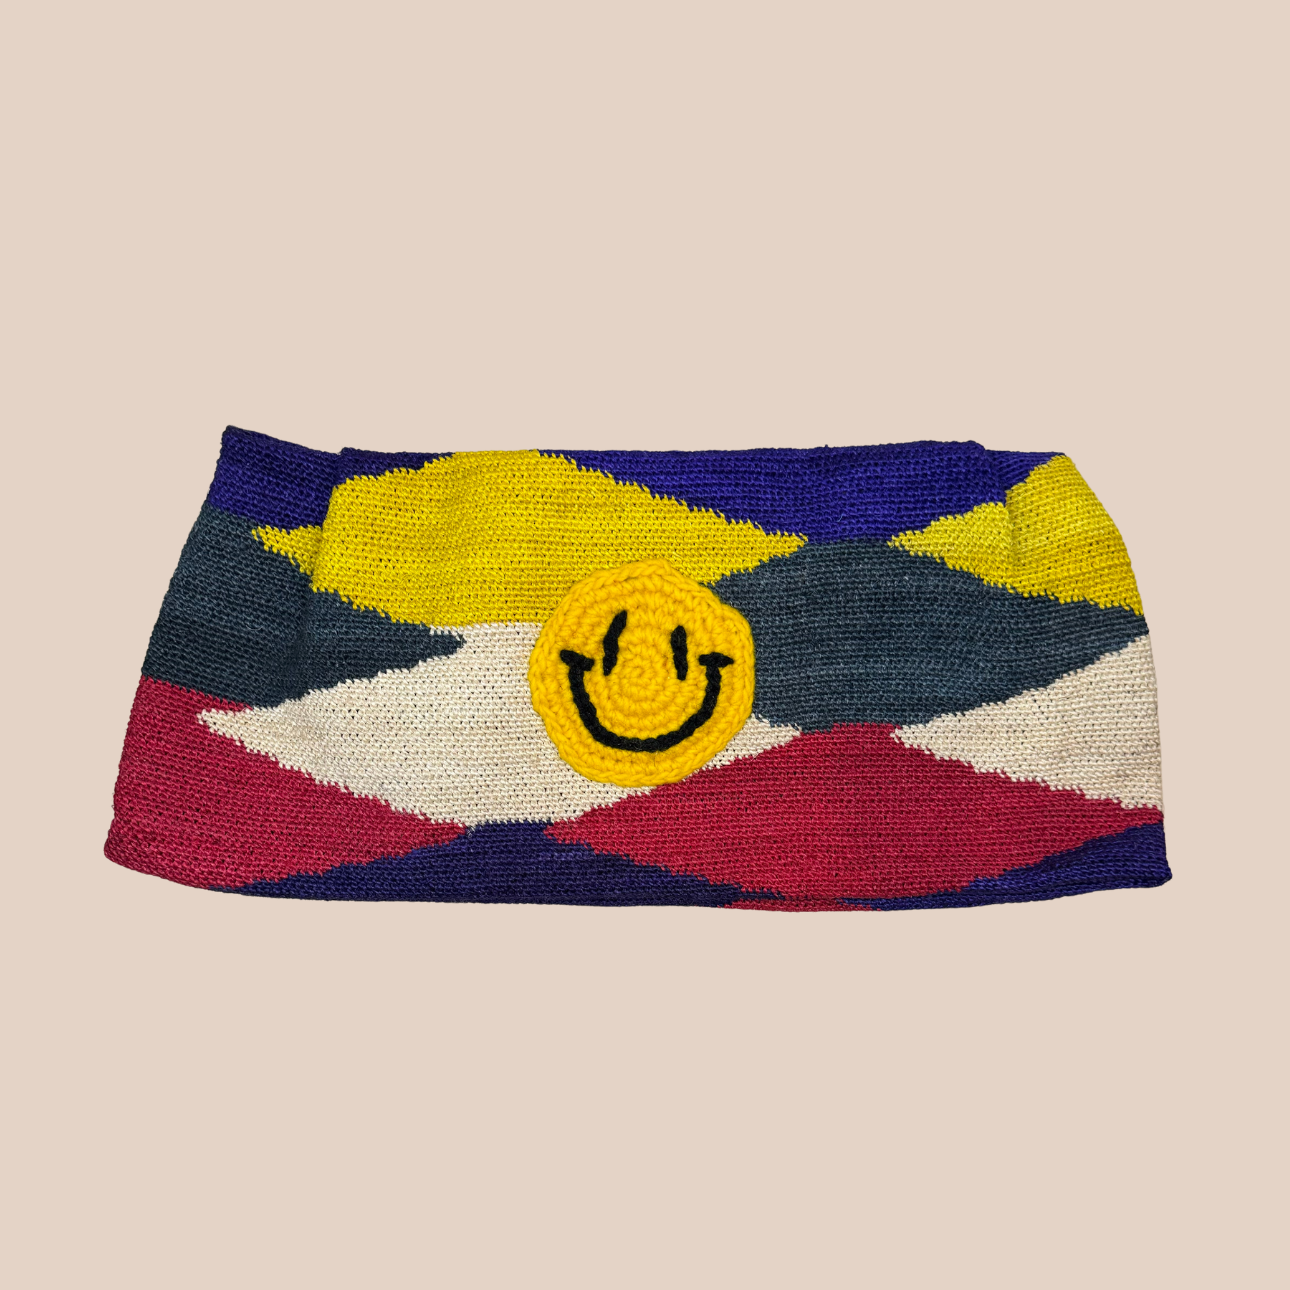 Image de la pochette isla smiley de Maison Badigo , pochette tendance et unique en fibres naturelles de cactus